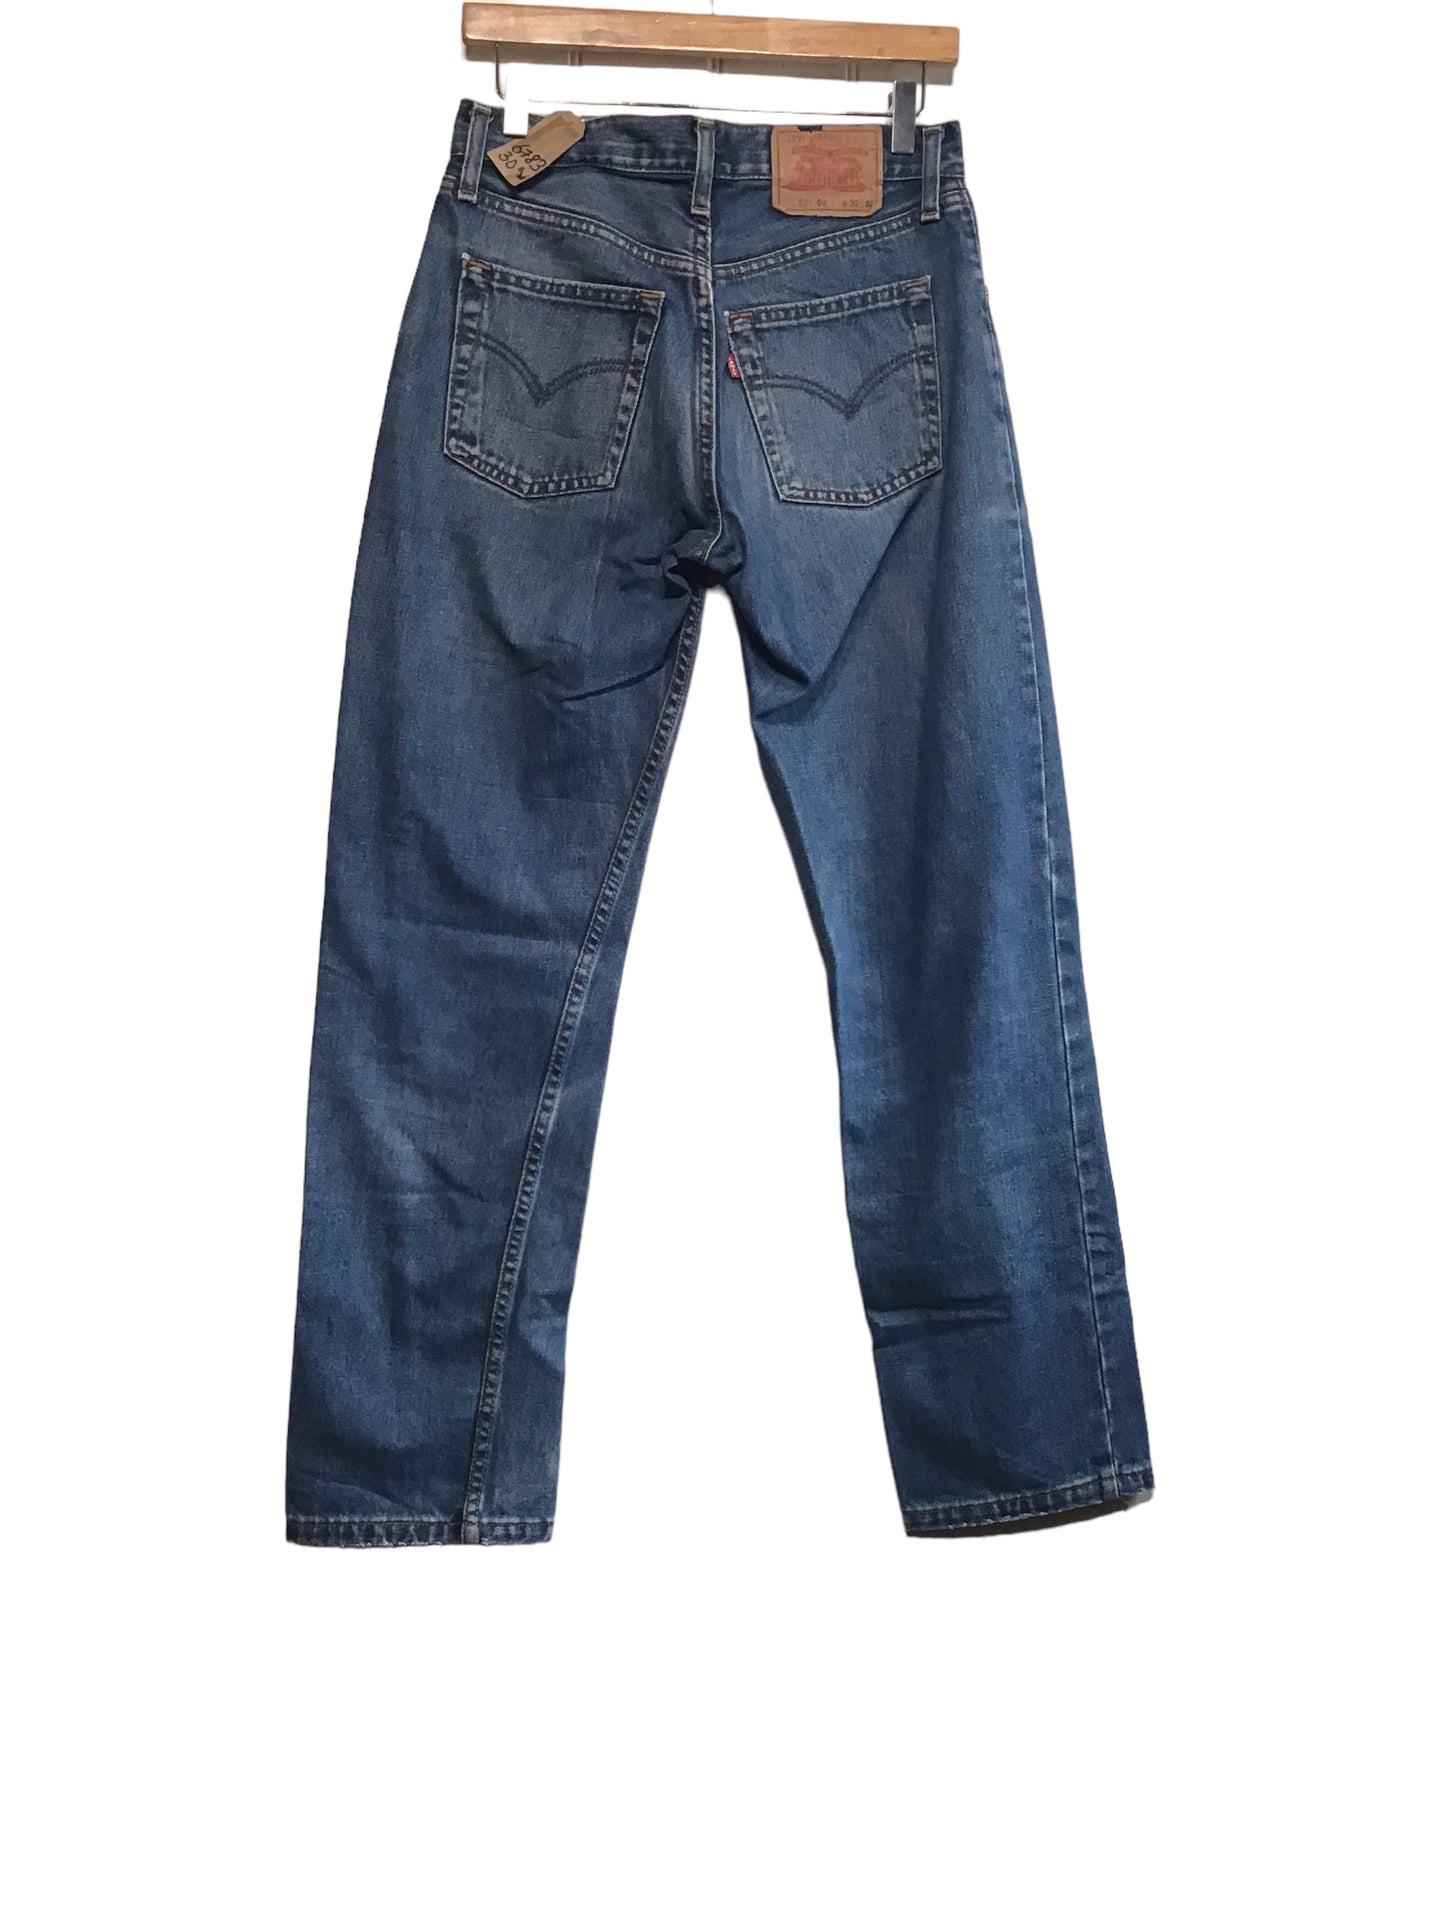 Levi 521 Jeans (30x32)